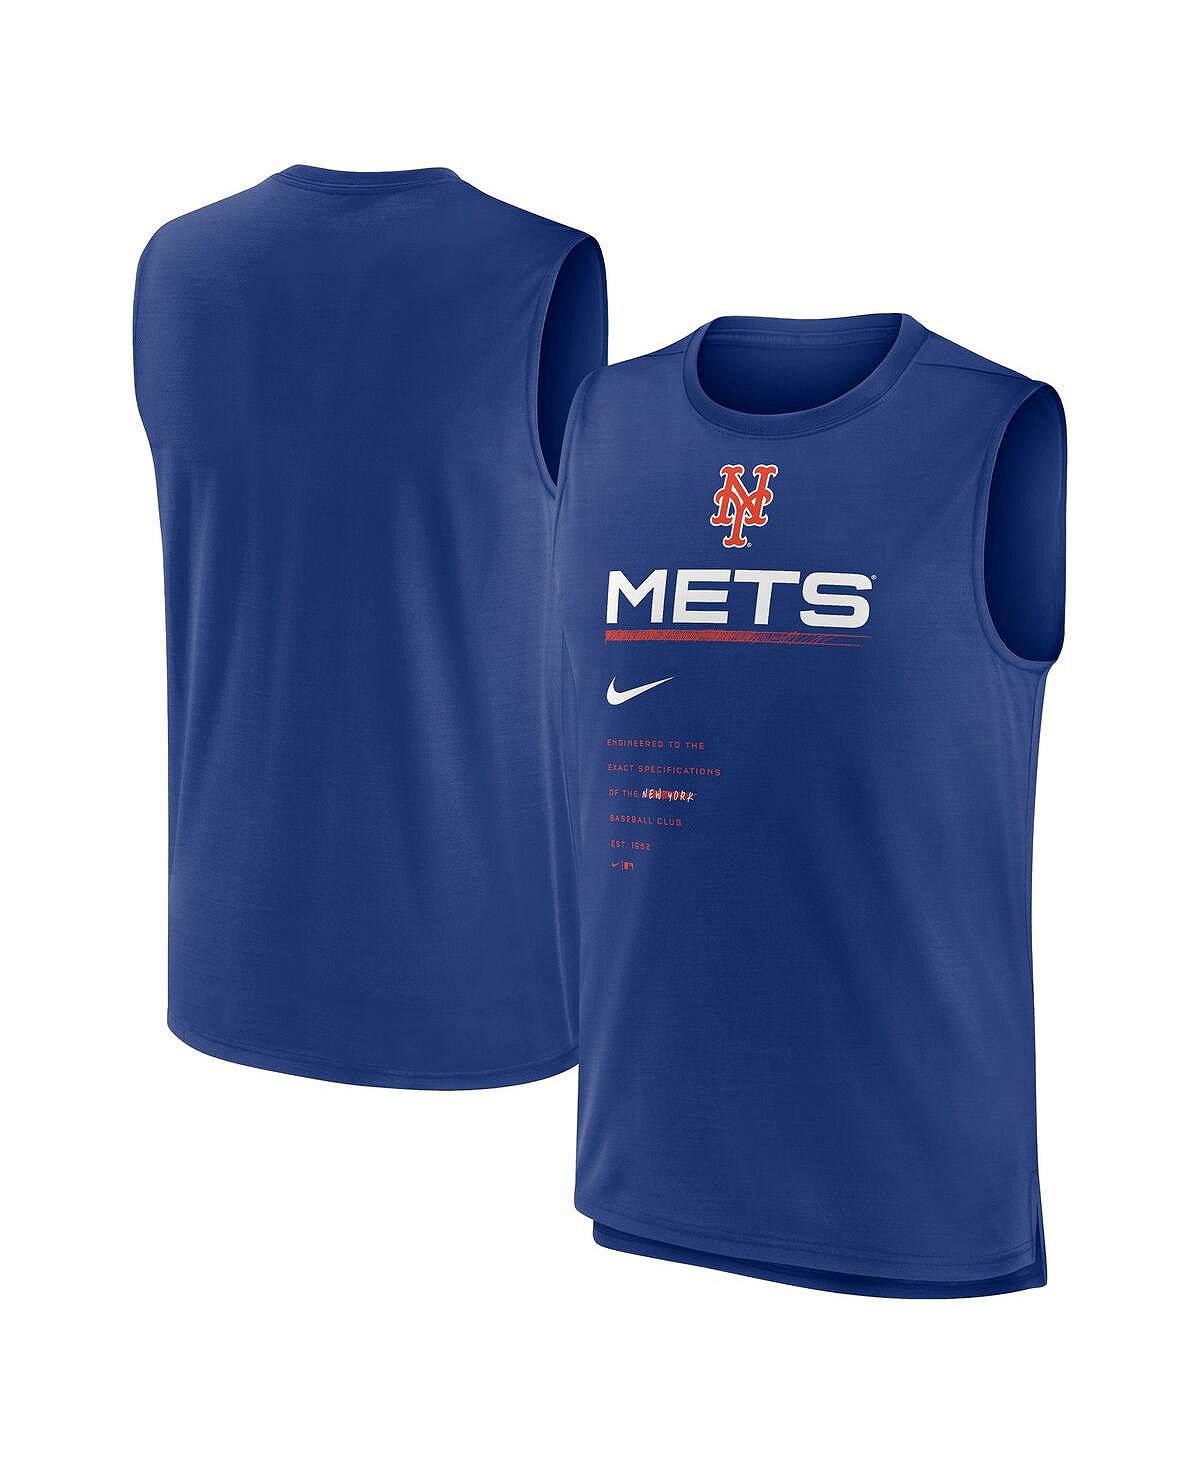 блузка new york style без рукавов 44 размер Мужская майка Royal New York Mets Exceed Performance Nike